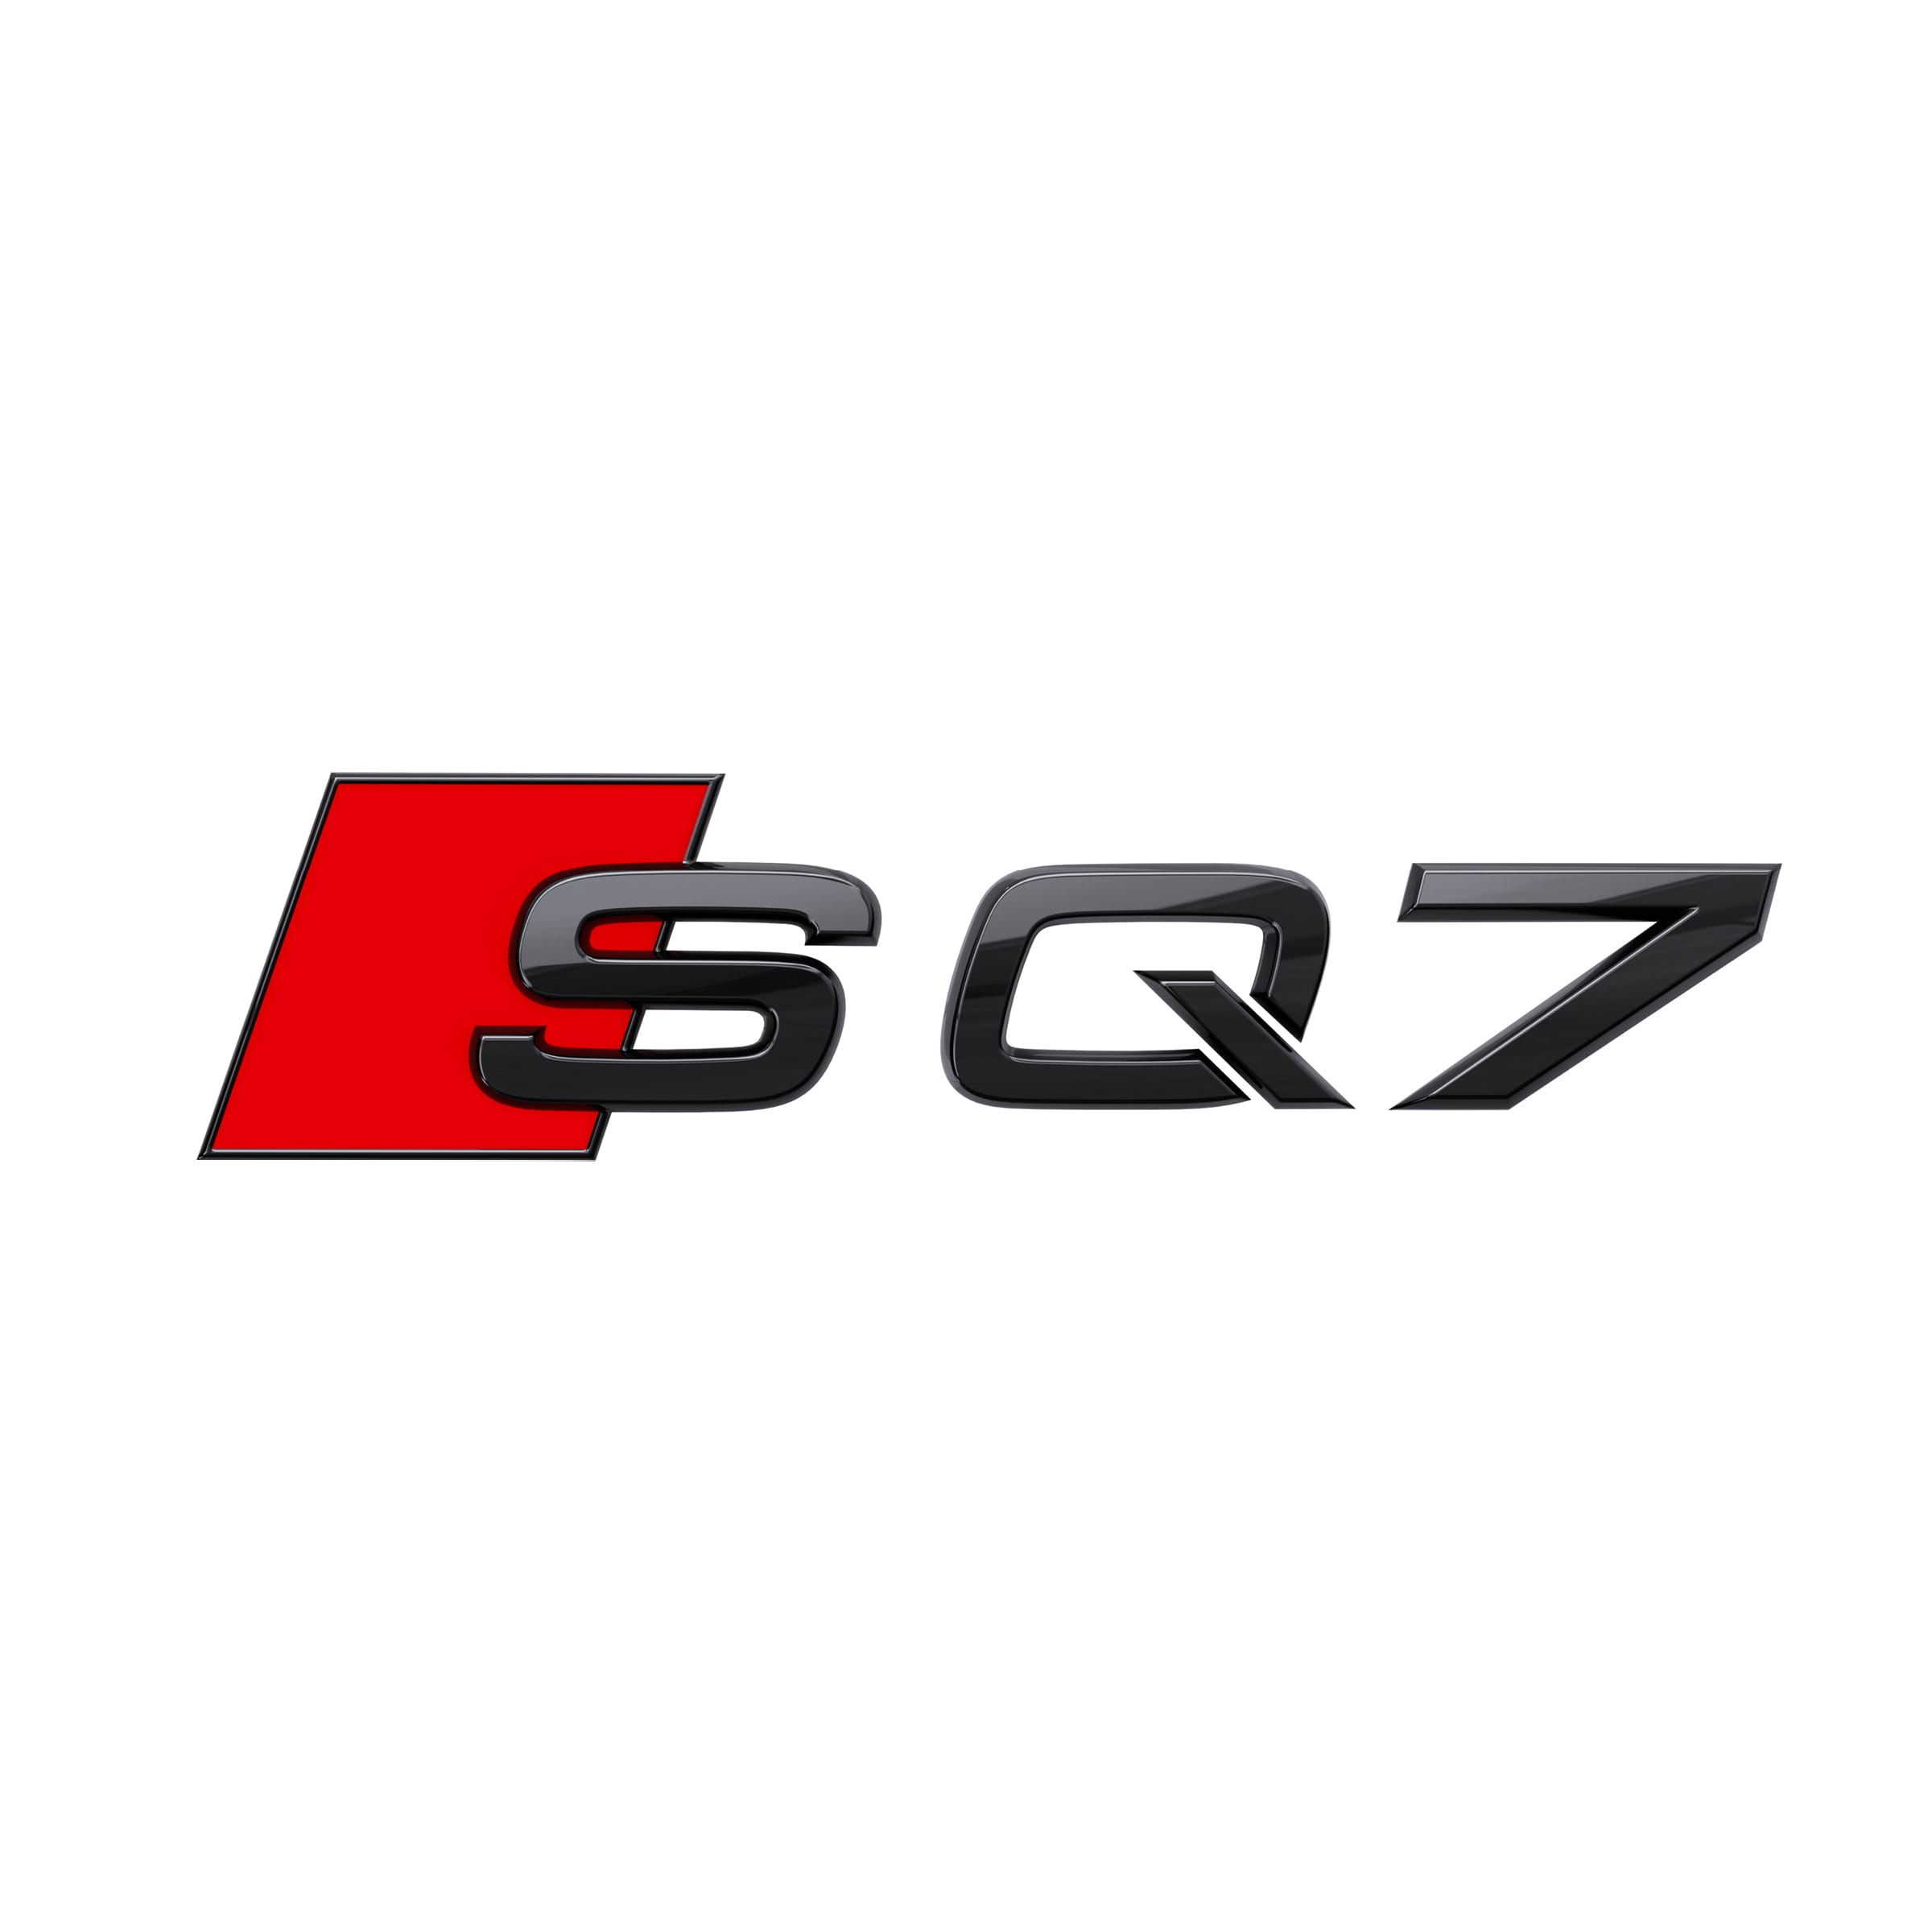 Modellbezeichnung SQ7 in Schwarz